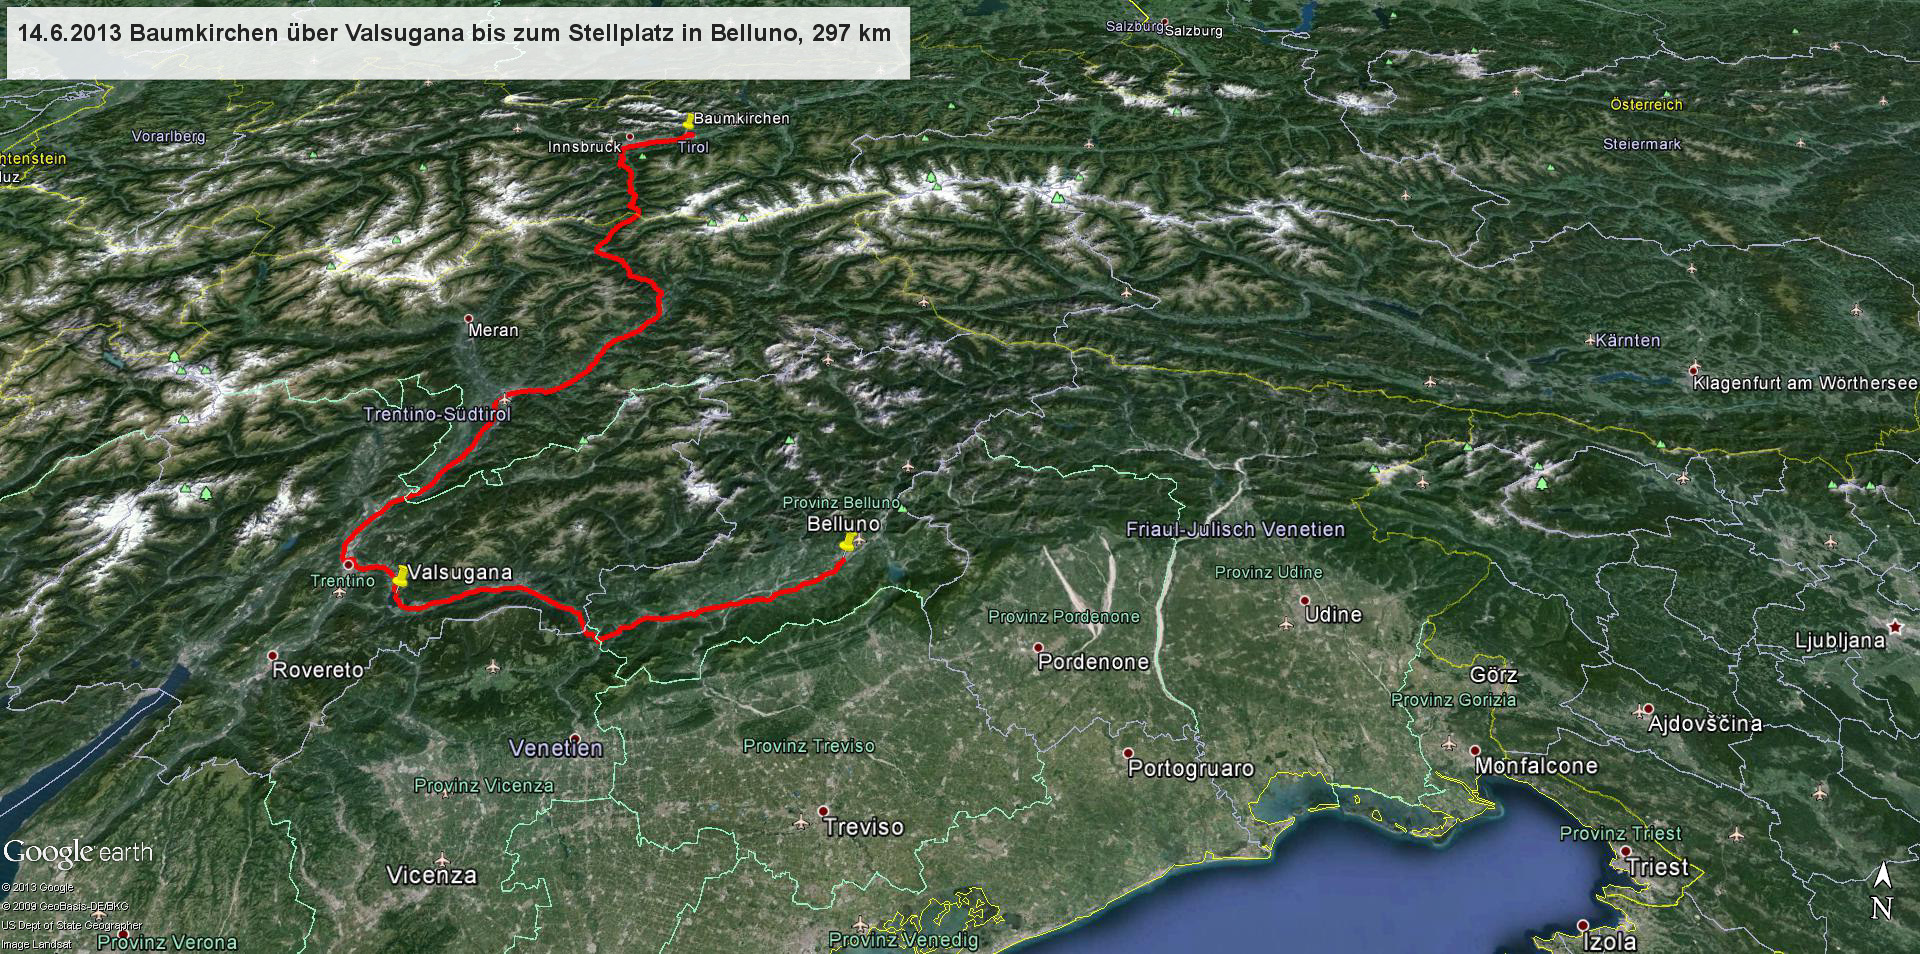 Die erste Etappe führt uns wieder über den Brennerpass nach Trient, durch das Valsugana nach Belluno, wo wir am frühen Abend am Stellplatz eintreffen. Die ersten 297 km verlaufen problemlos, nur auf der Brennerautobahn bis Trient herrscht reger Verkehr in Richtung Süden.